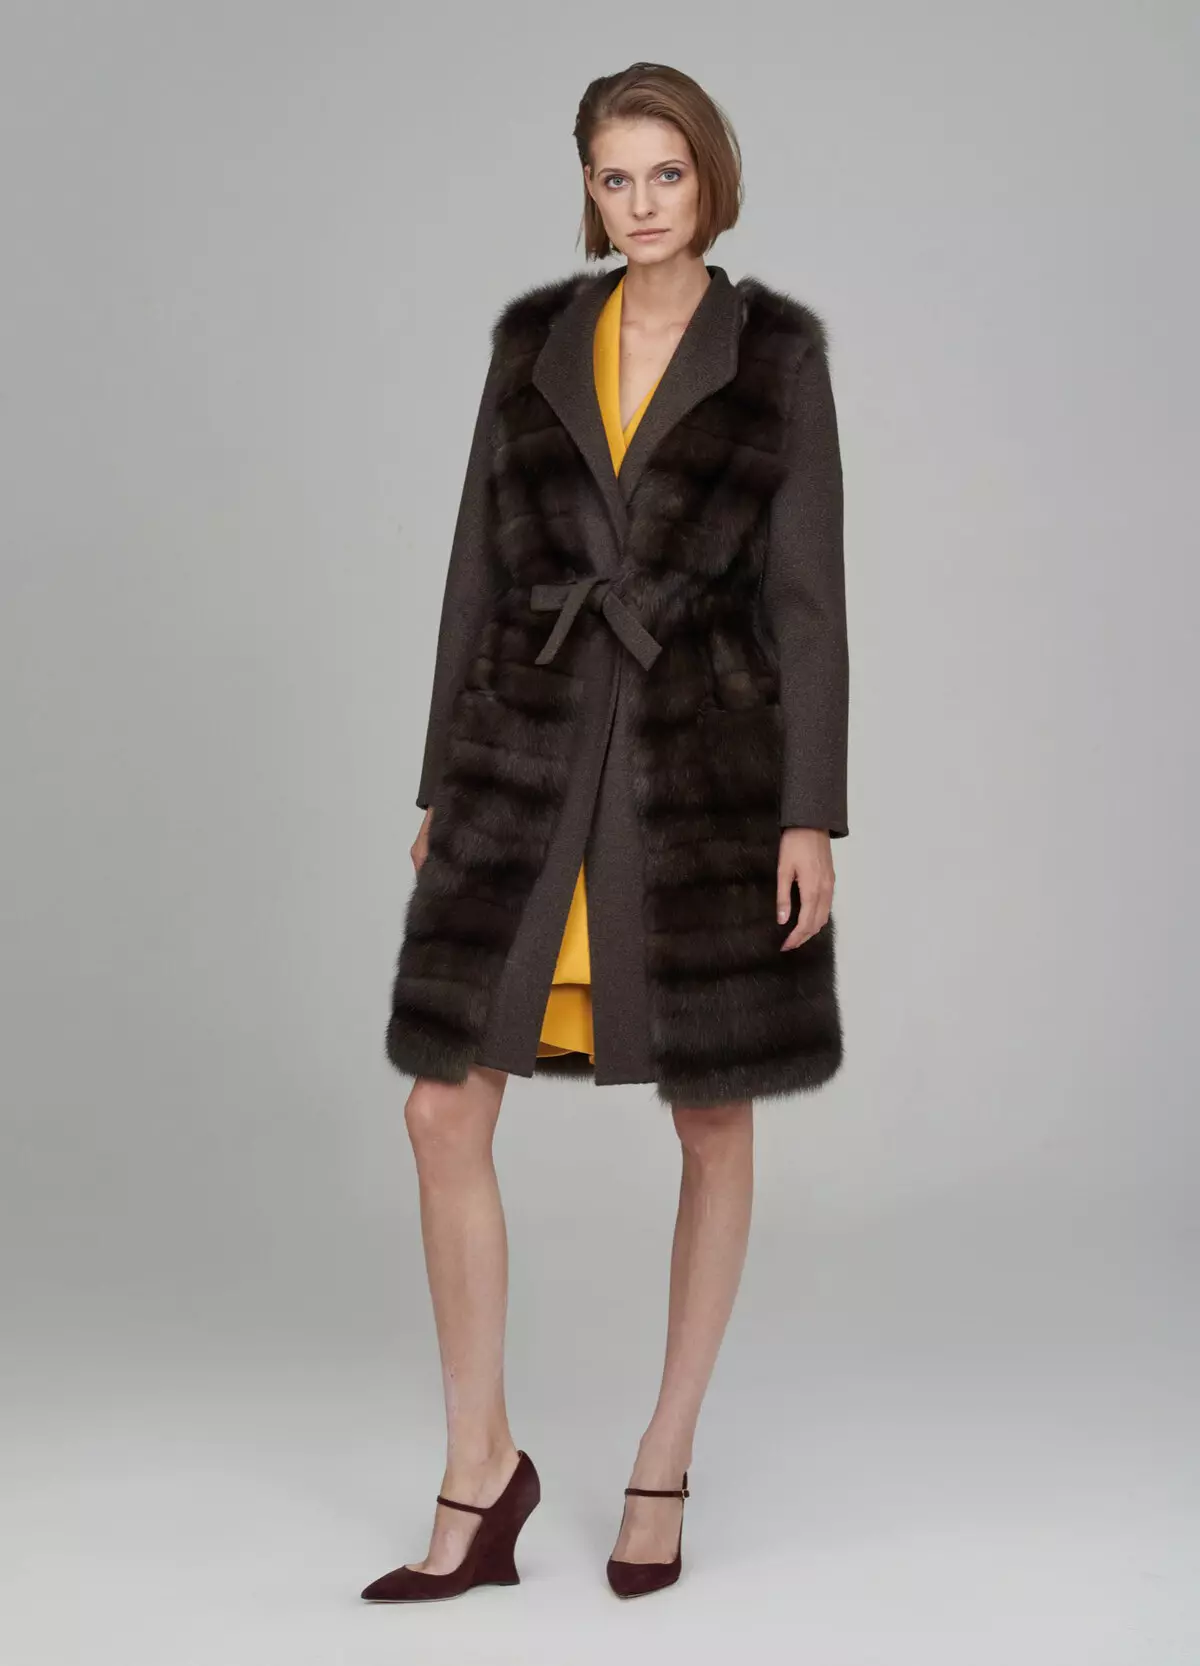 Fur coat mula sa mink pieces (70 mga larawan): Mga Review tungkol sa mink coat pieces habang nagkakahalaga ito 14423_30